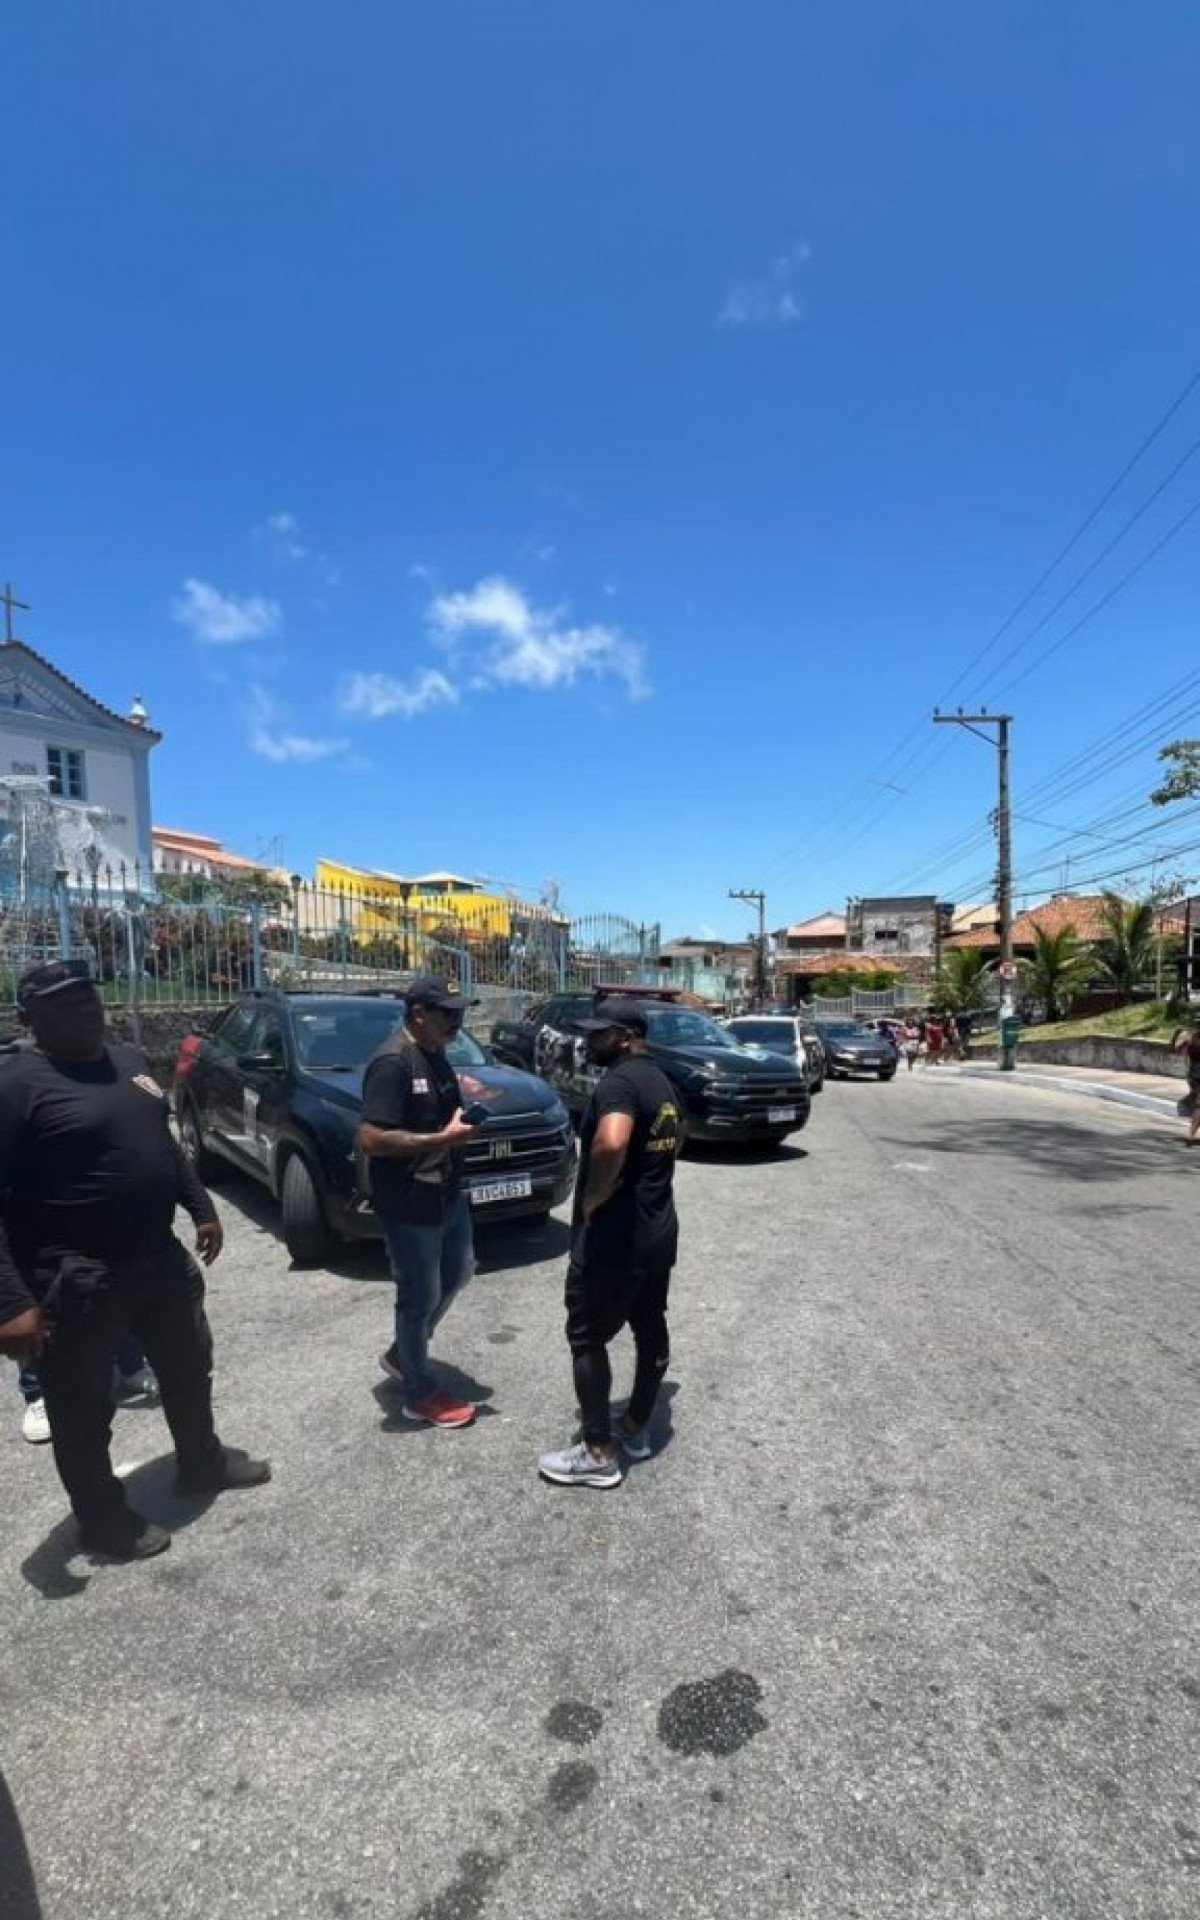 Segurança Pública realiza nova fase da ‘Operação Flanelinha’ em Arraial do Cabo | Arraial do Cabo - Rio de Janeiro